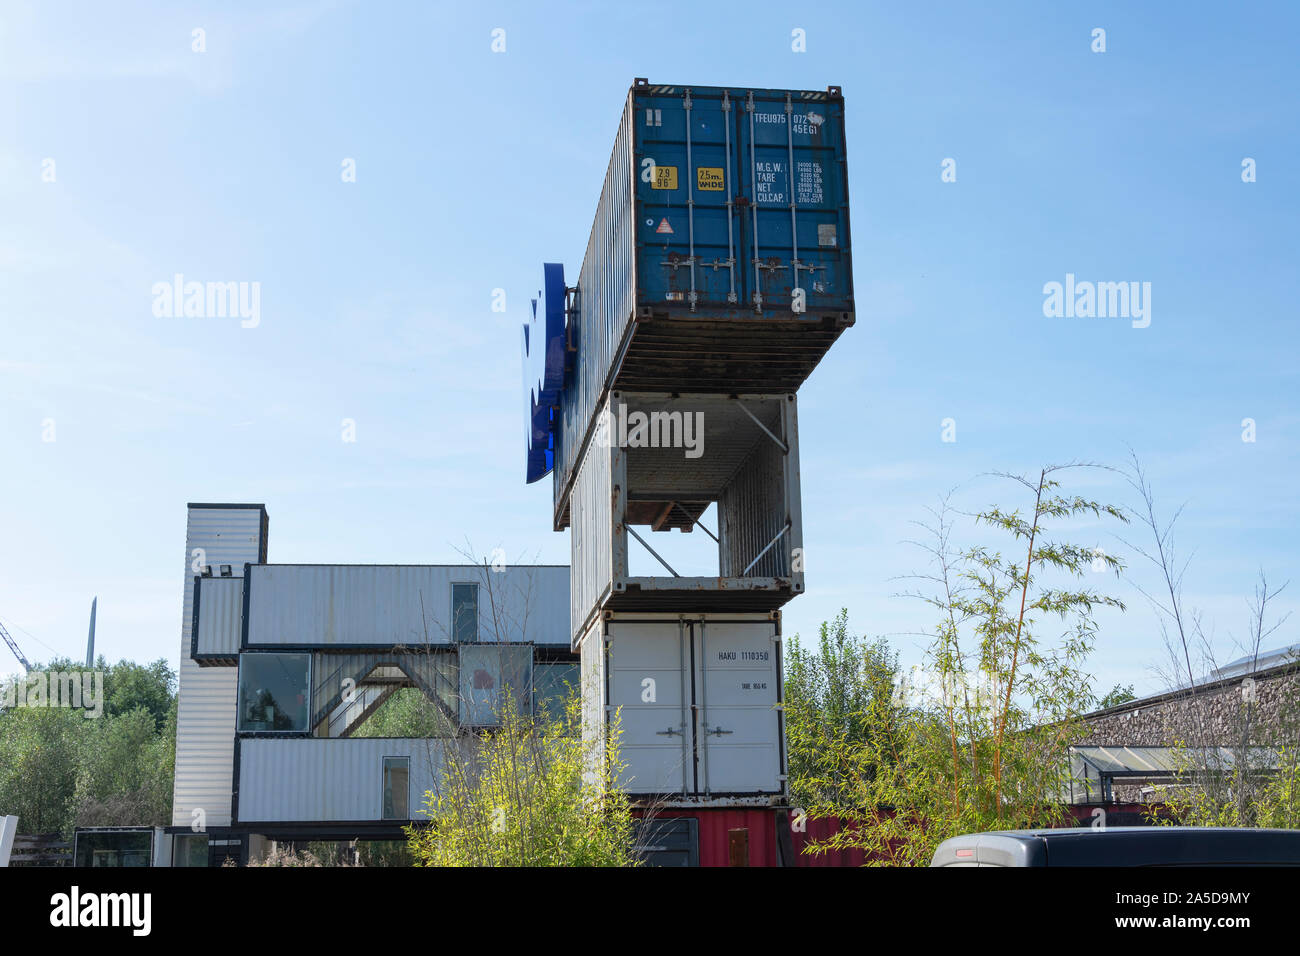 Stekene, Belgium, 14 september 2019, heel oude scheeps-containers op elkaar gezet, hier zie je de ingang van het wereld erfgoed Verbeke Foundation van Stock Photo